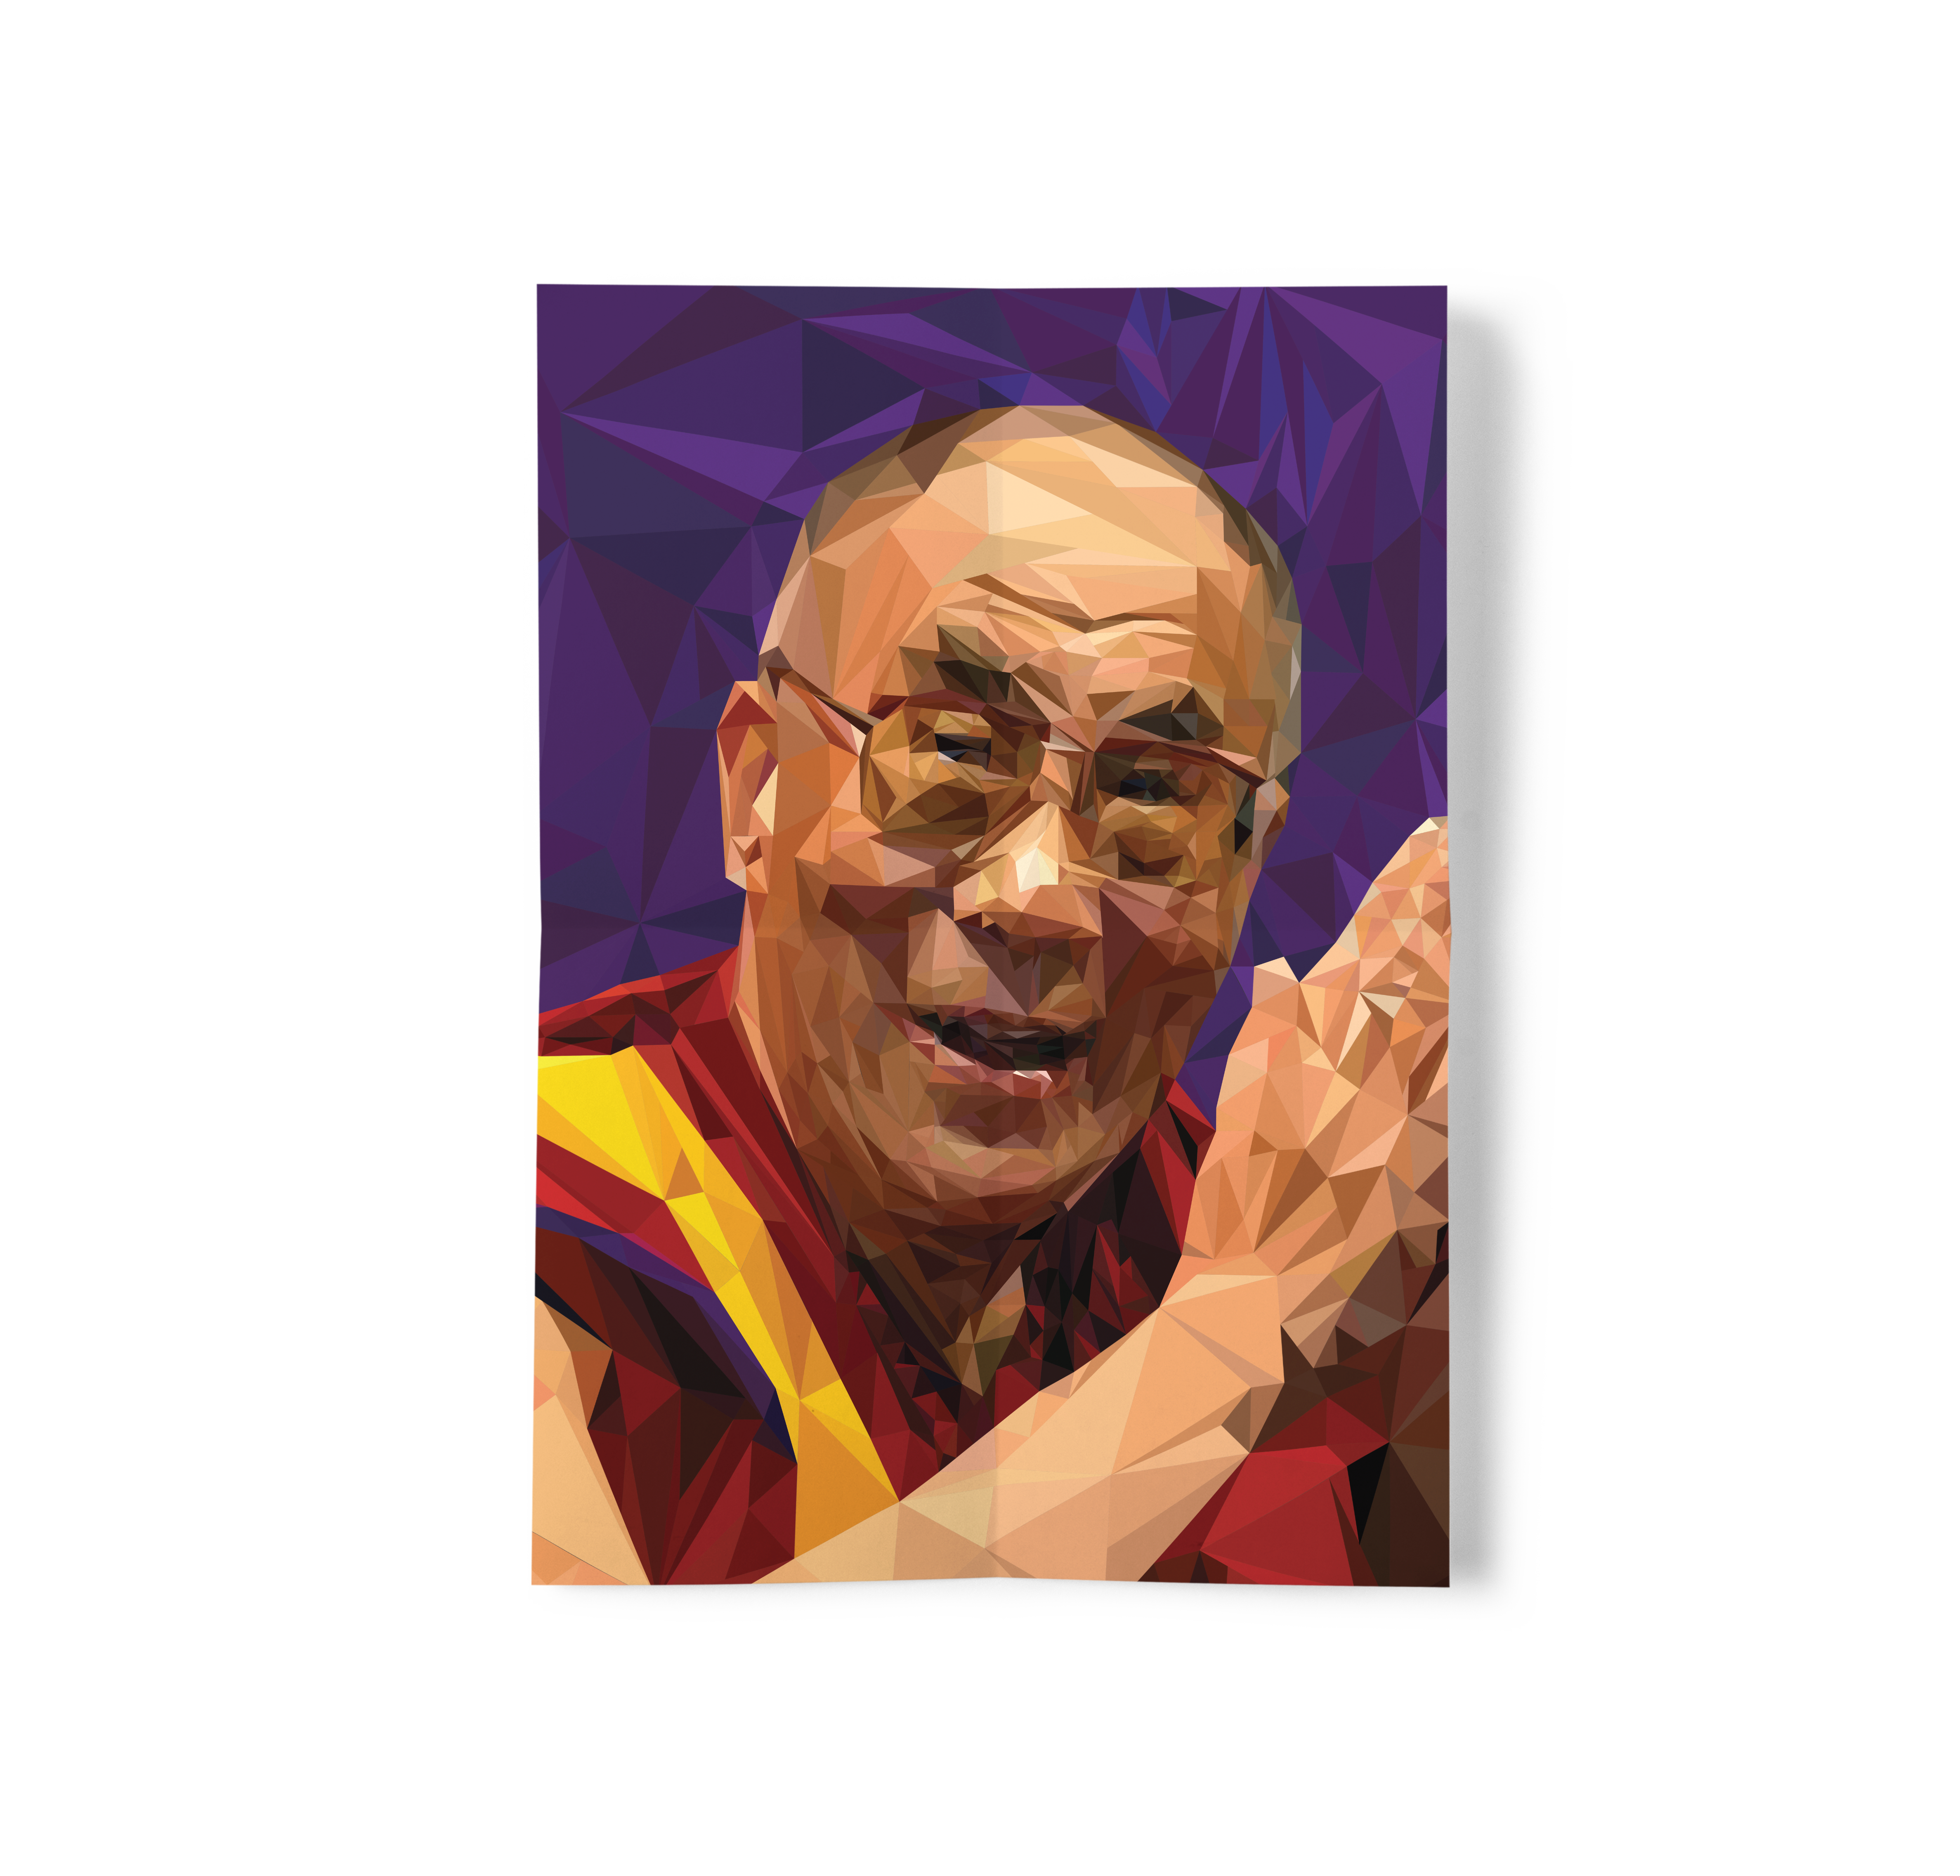 Low Poly illustration of Dalai Lama